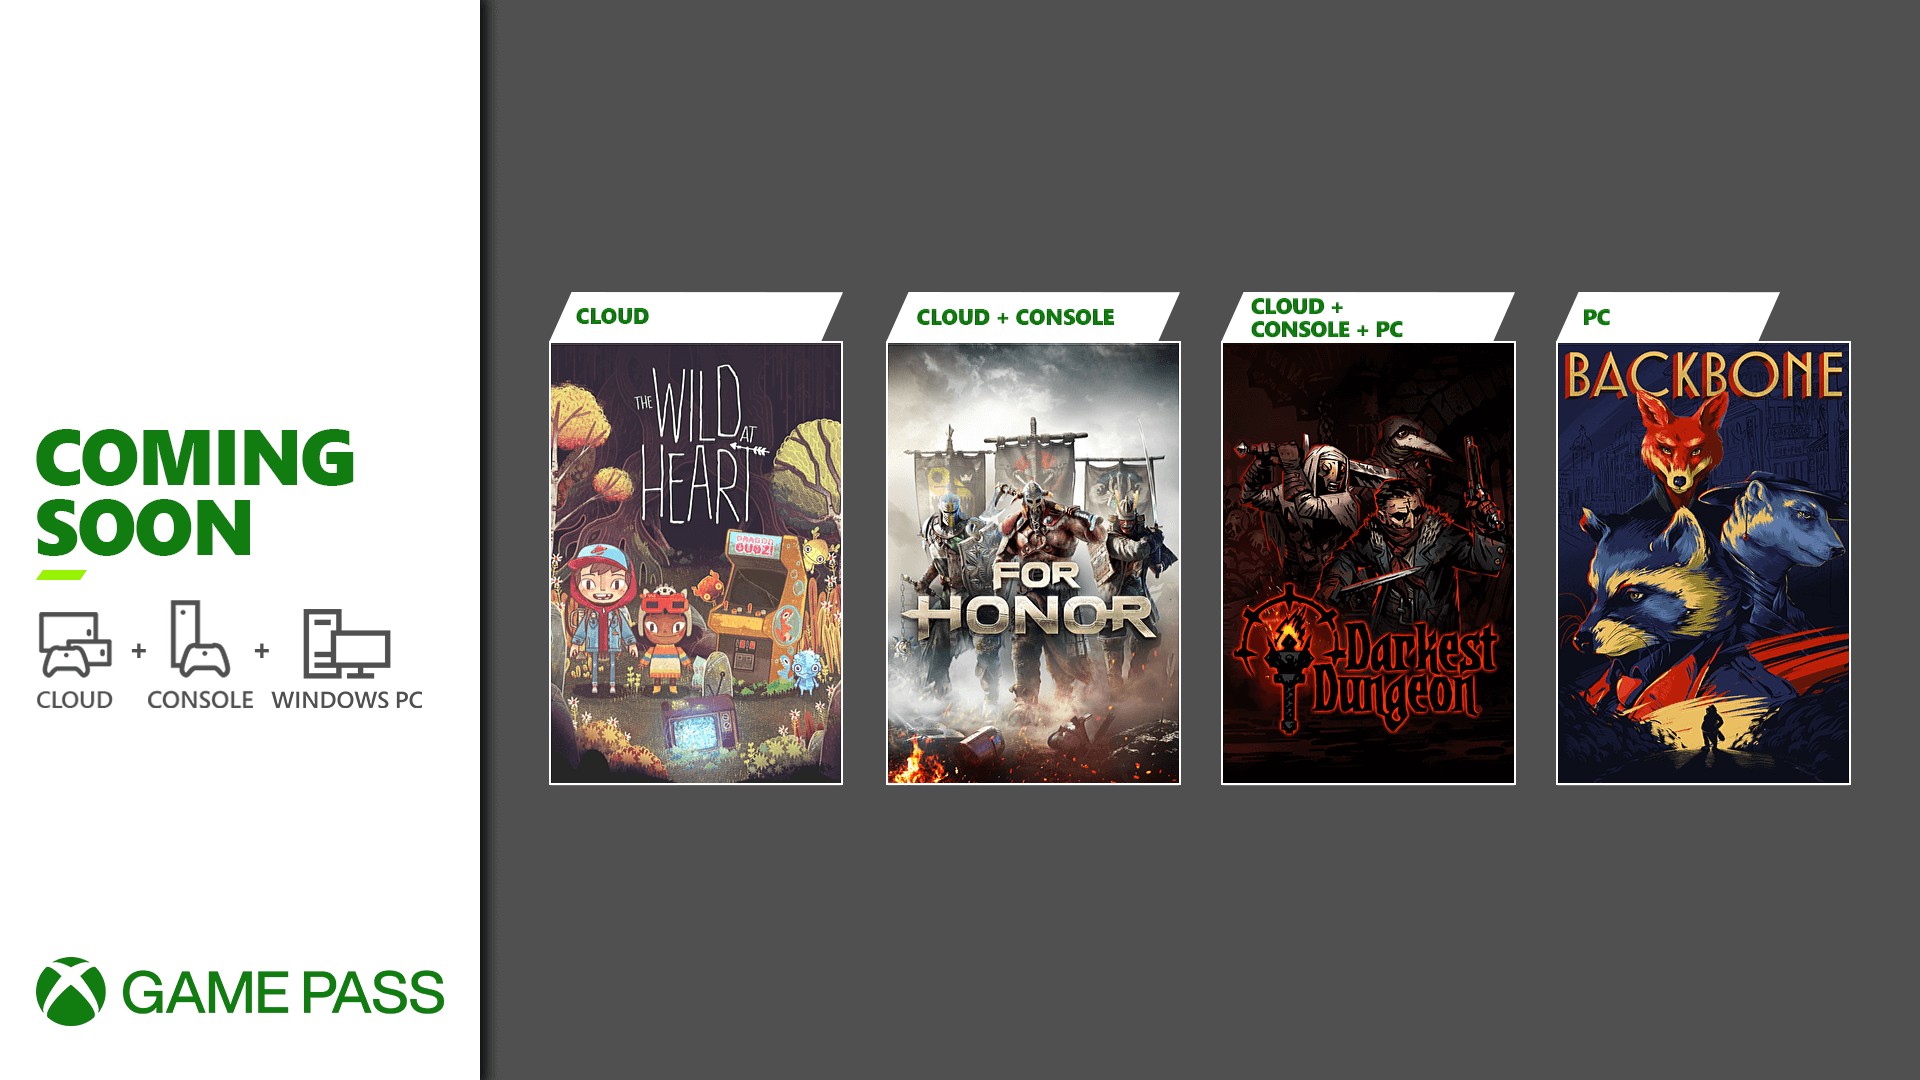 Em breve no Xbox Game Pass: Halo Infinite, Among Us, Stardew Valley e mais  - Xbox Wire em Português